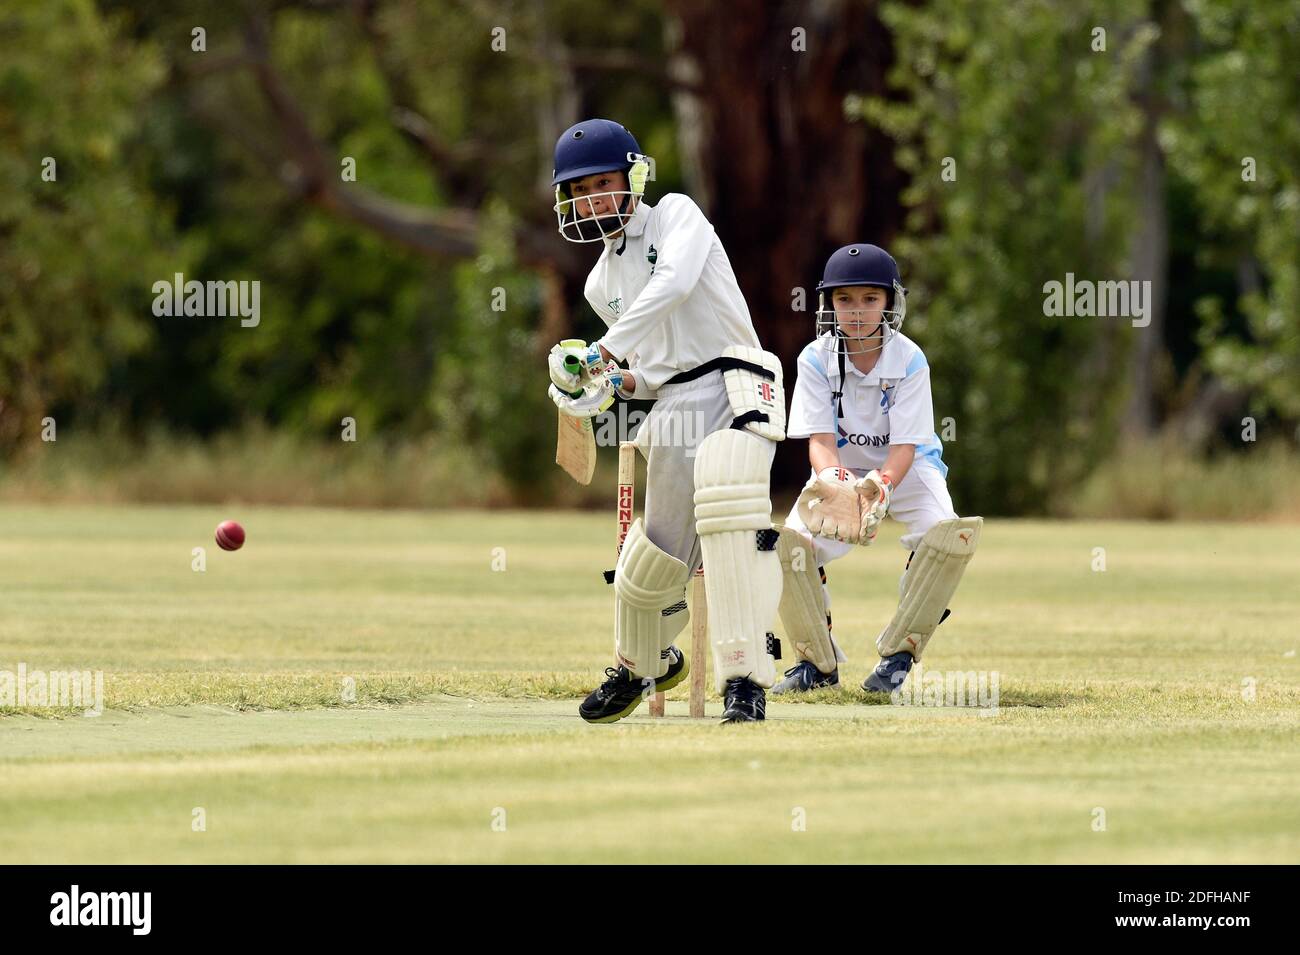 Les Bushrangers de Benalla de moins de 12 ans prennent sur les Colts de Wangaratta à Benalla. Australie Banque D'Images